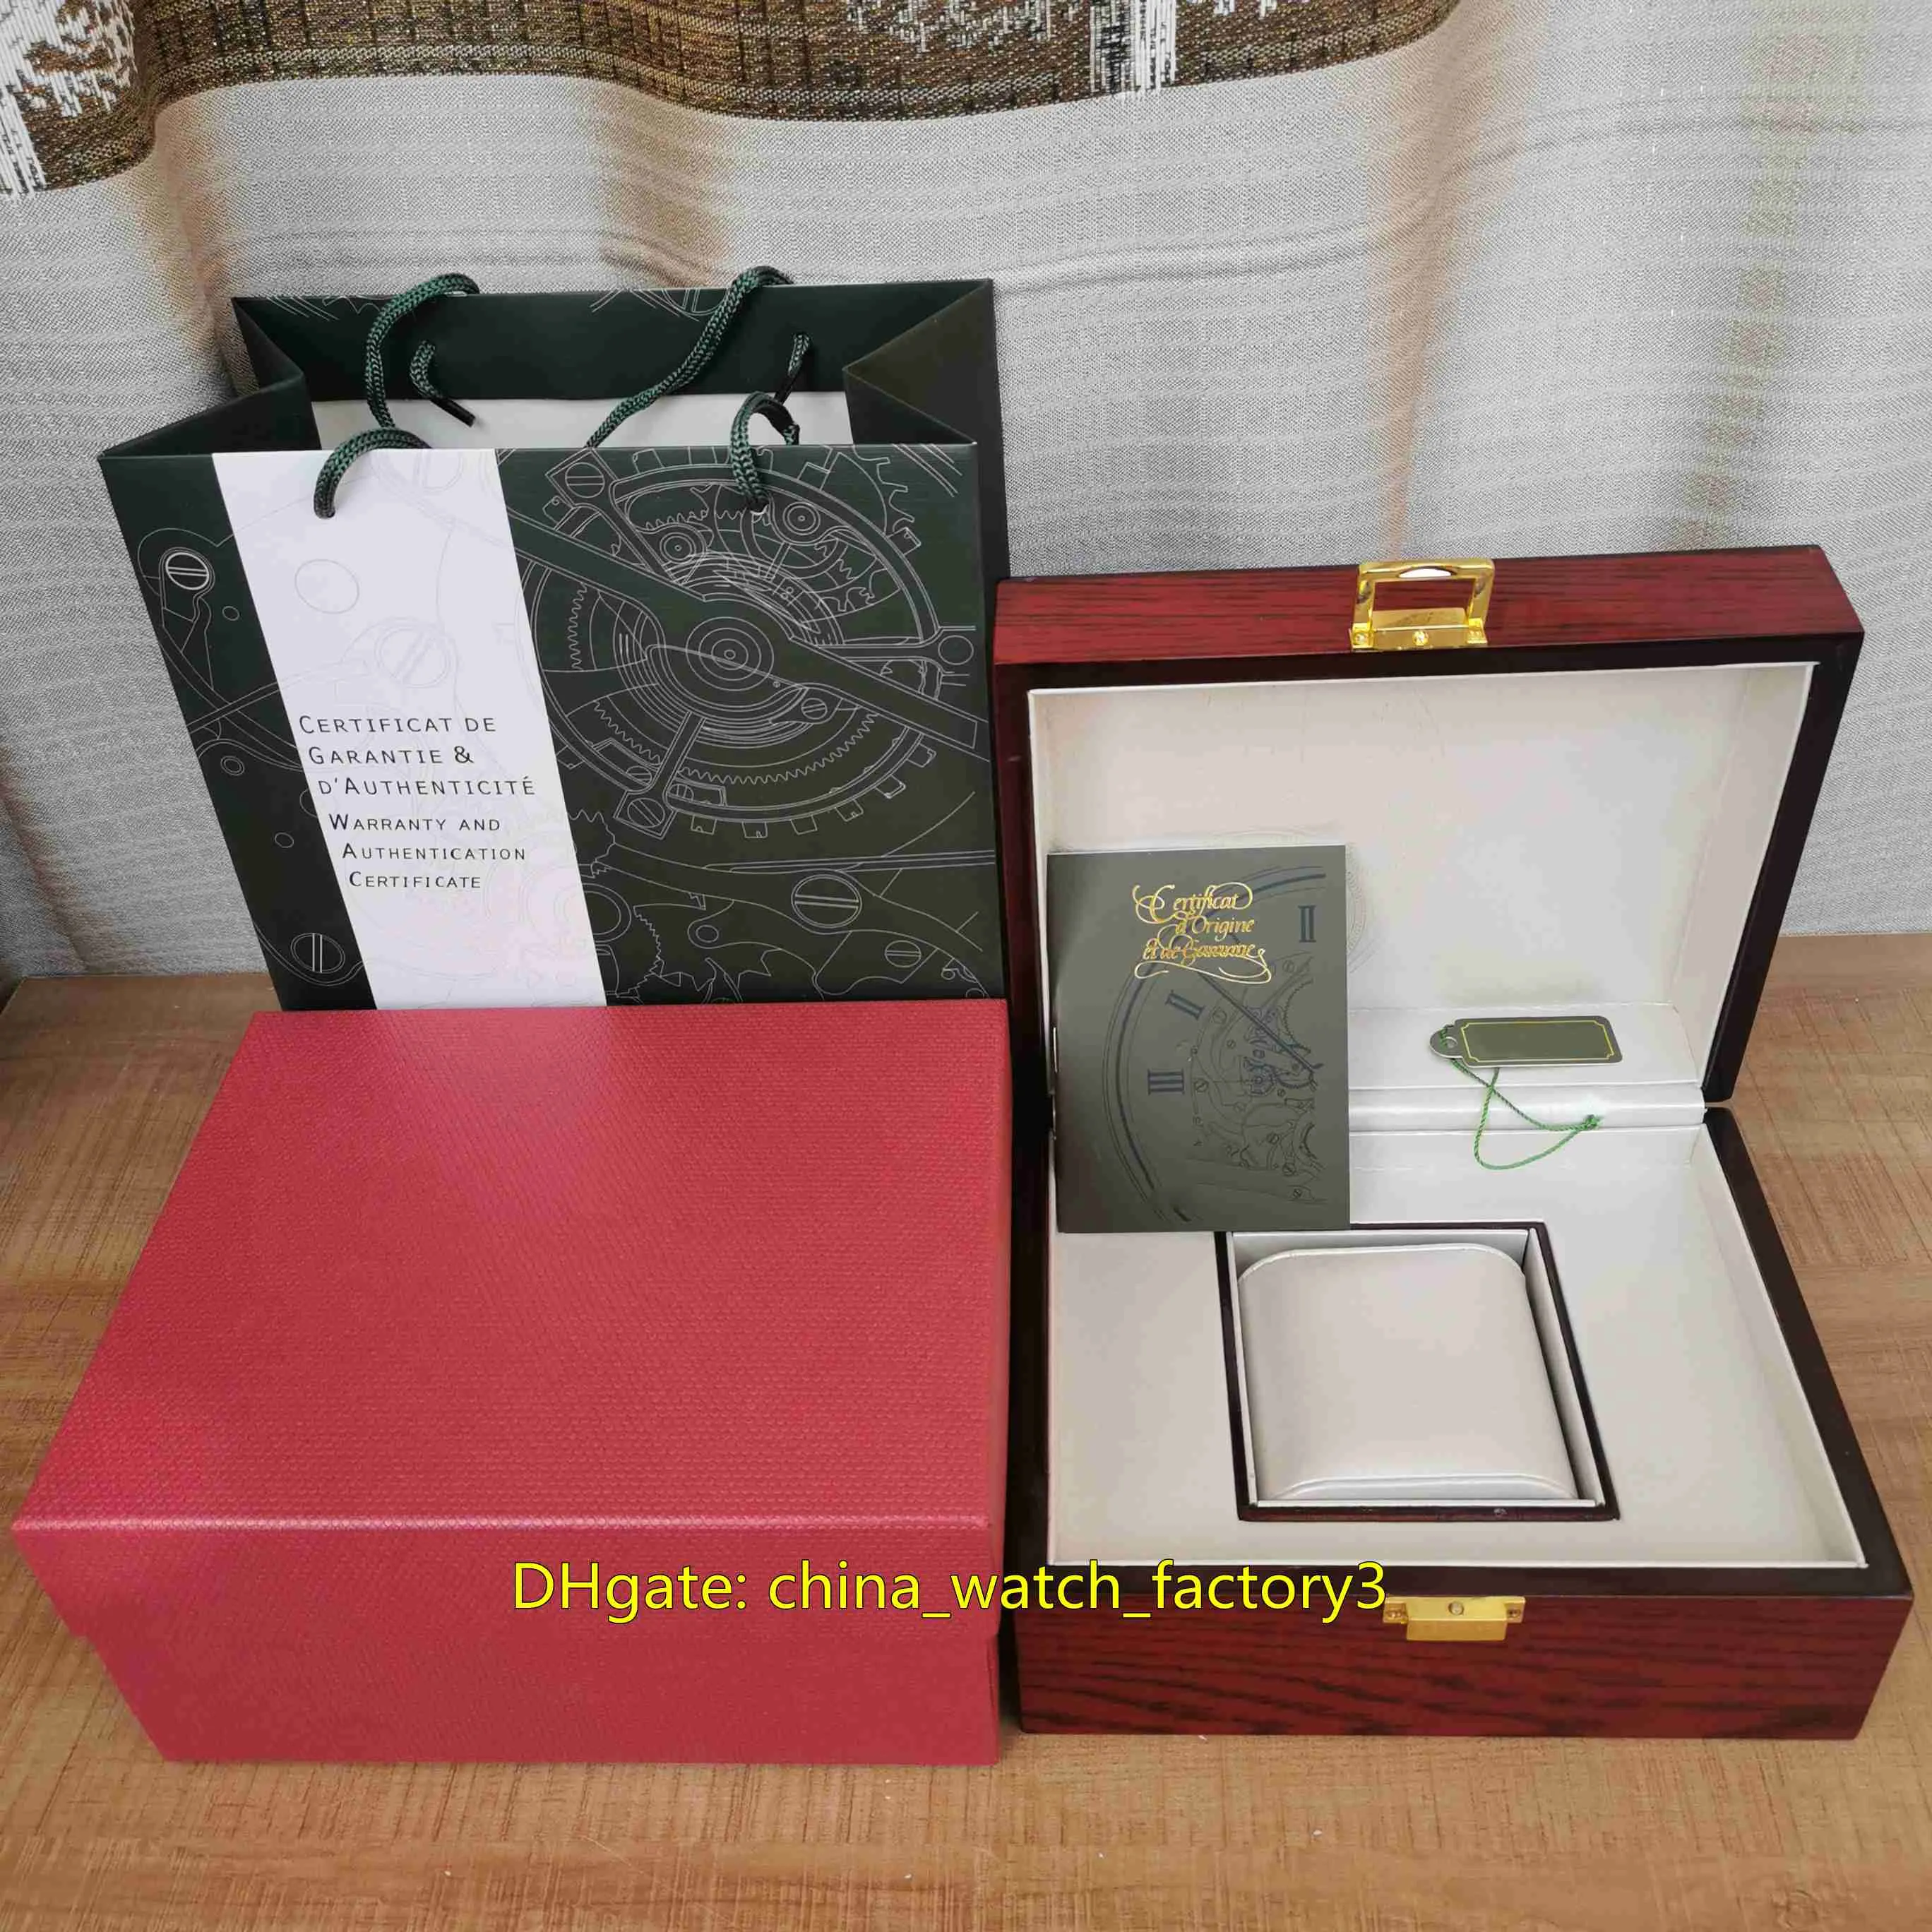 Verkoop van hoge kwaliteit Royal Oak Offshore horloges dozen hout lederen horloge originele doos papieren slot rode handtas 20 mm x 16 mm voor 274M245I